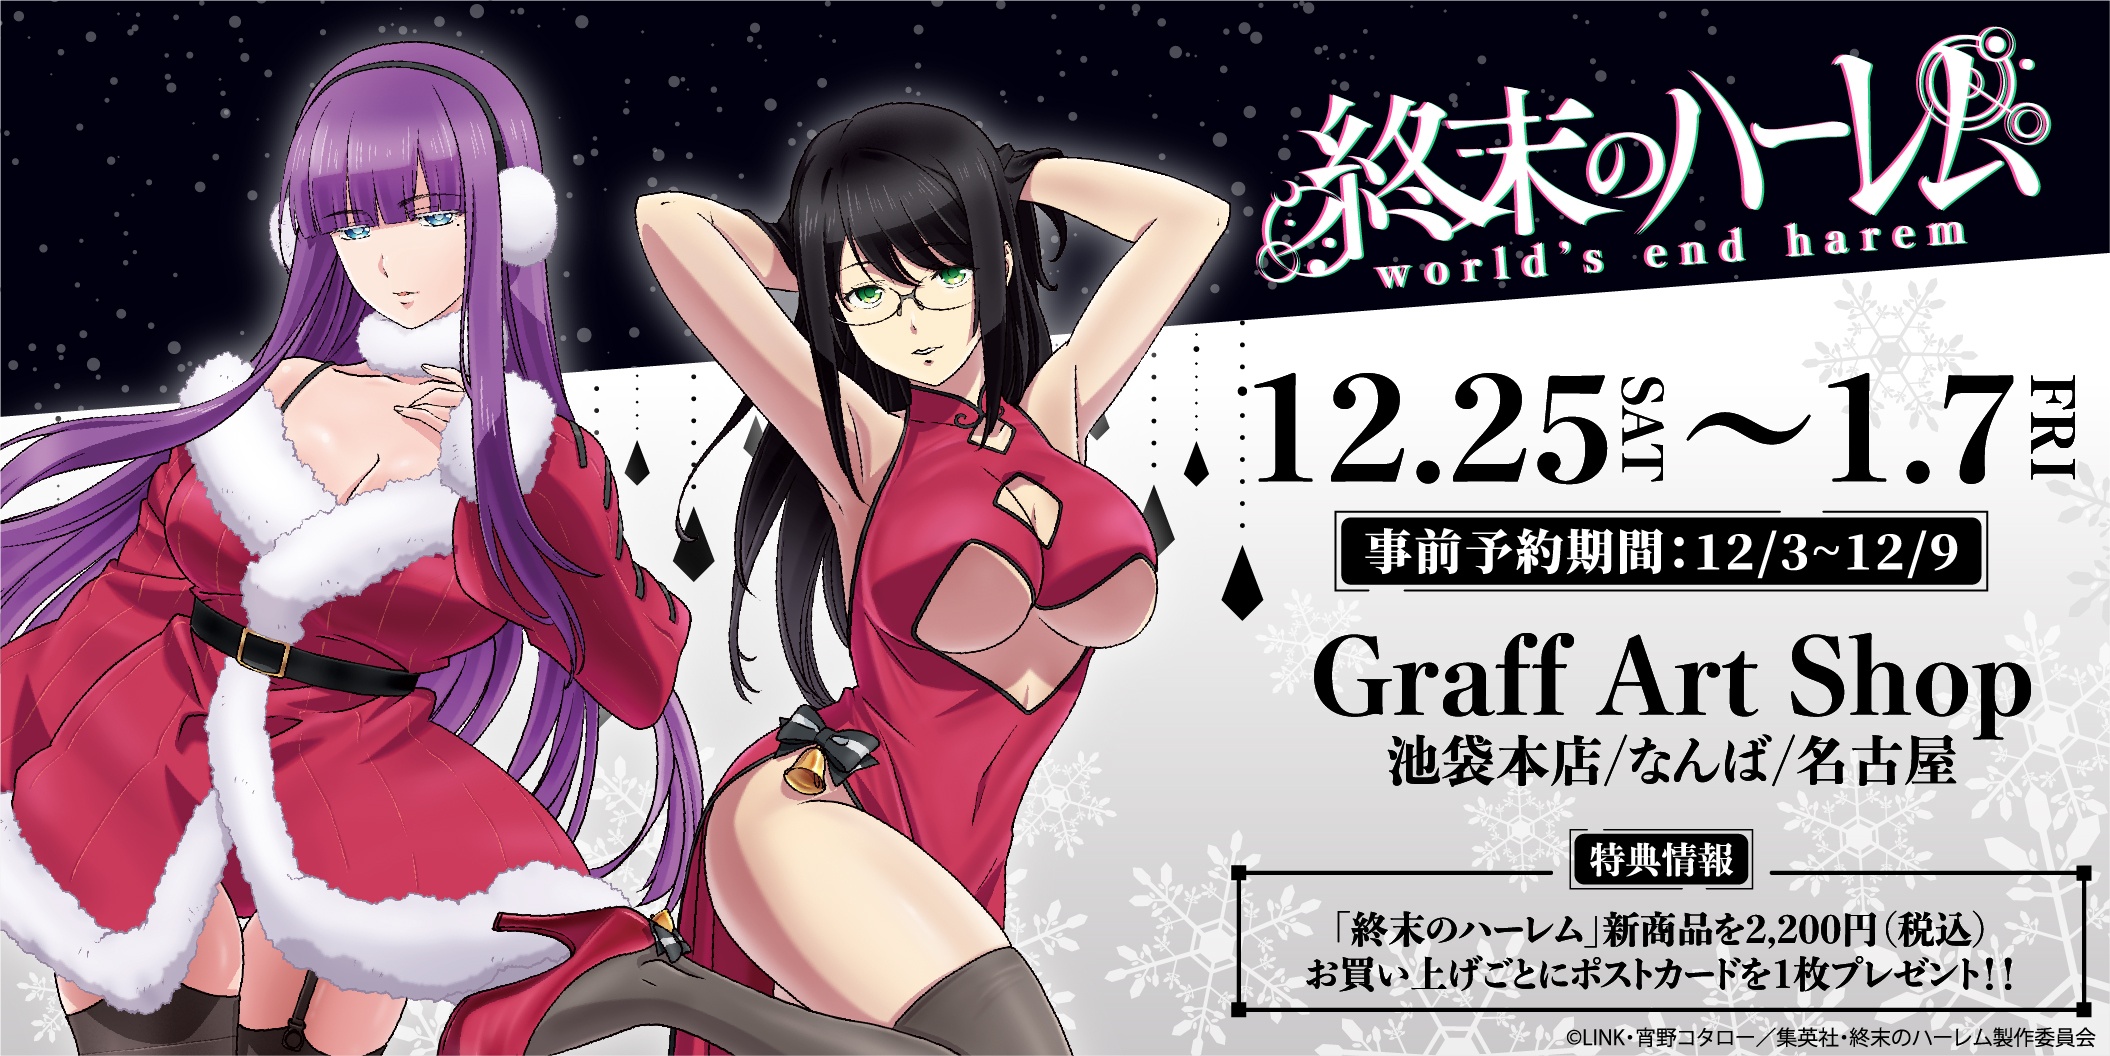 Shuumatsu no Harem Anime Christmas Visual Revealed - Otaku Tale